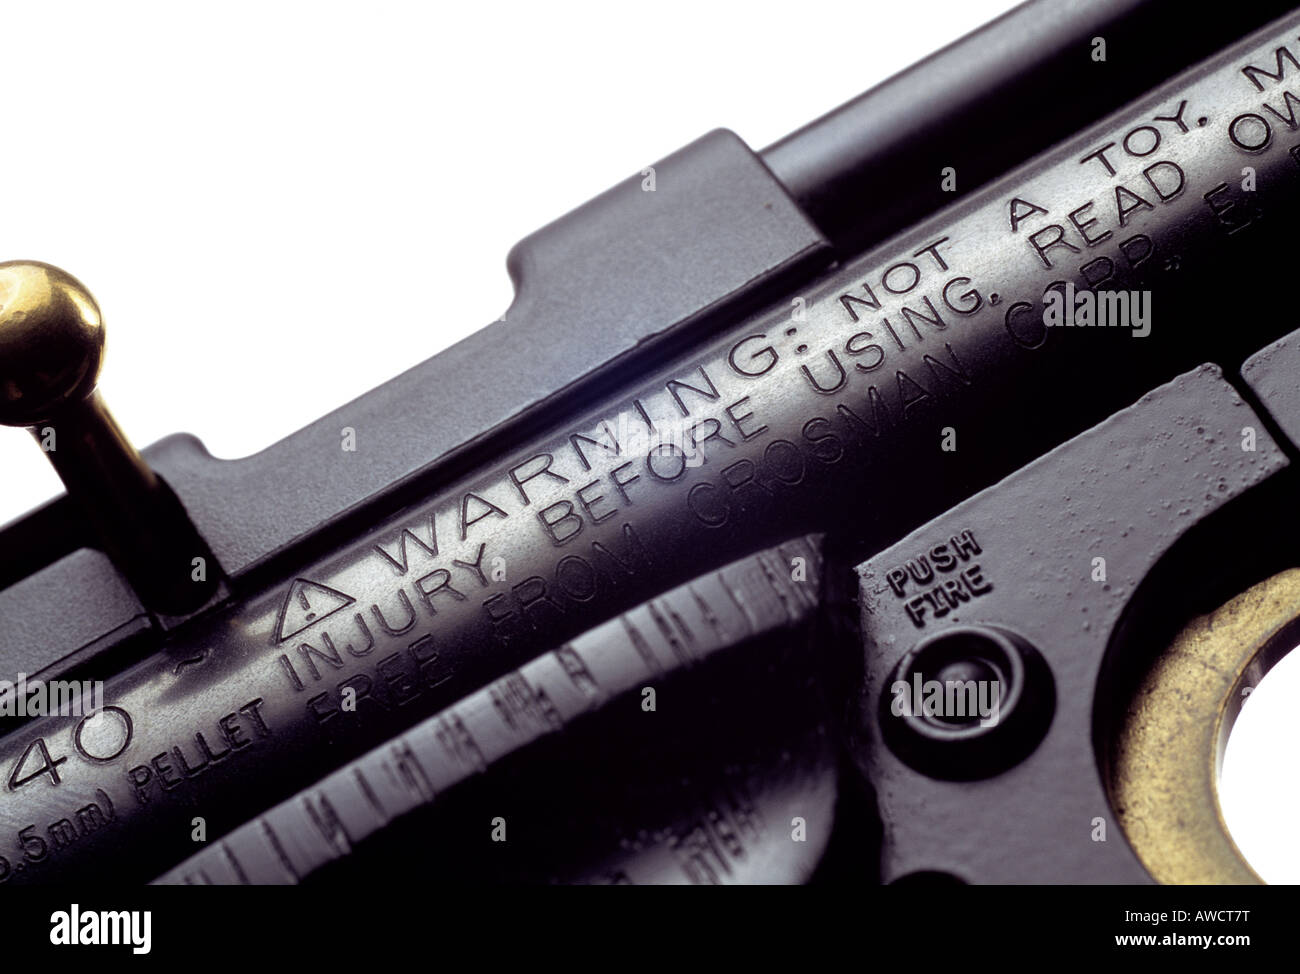 Warning notice on a gun. Stock Photo